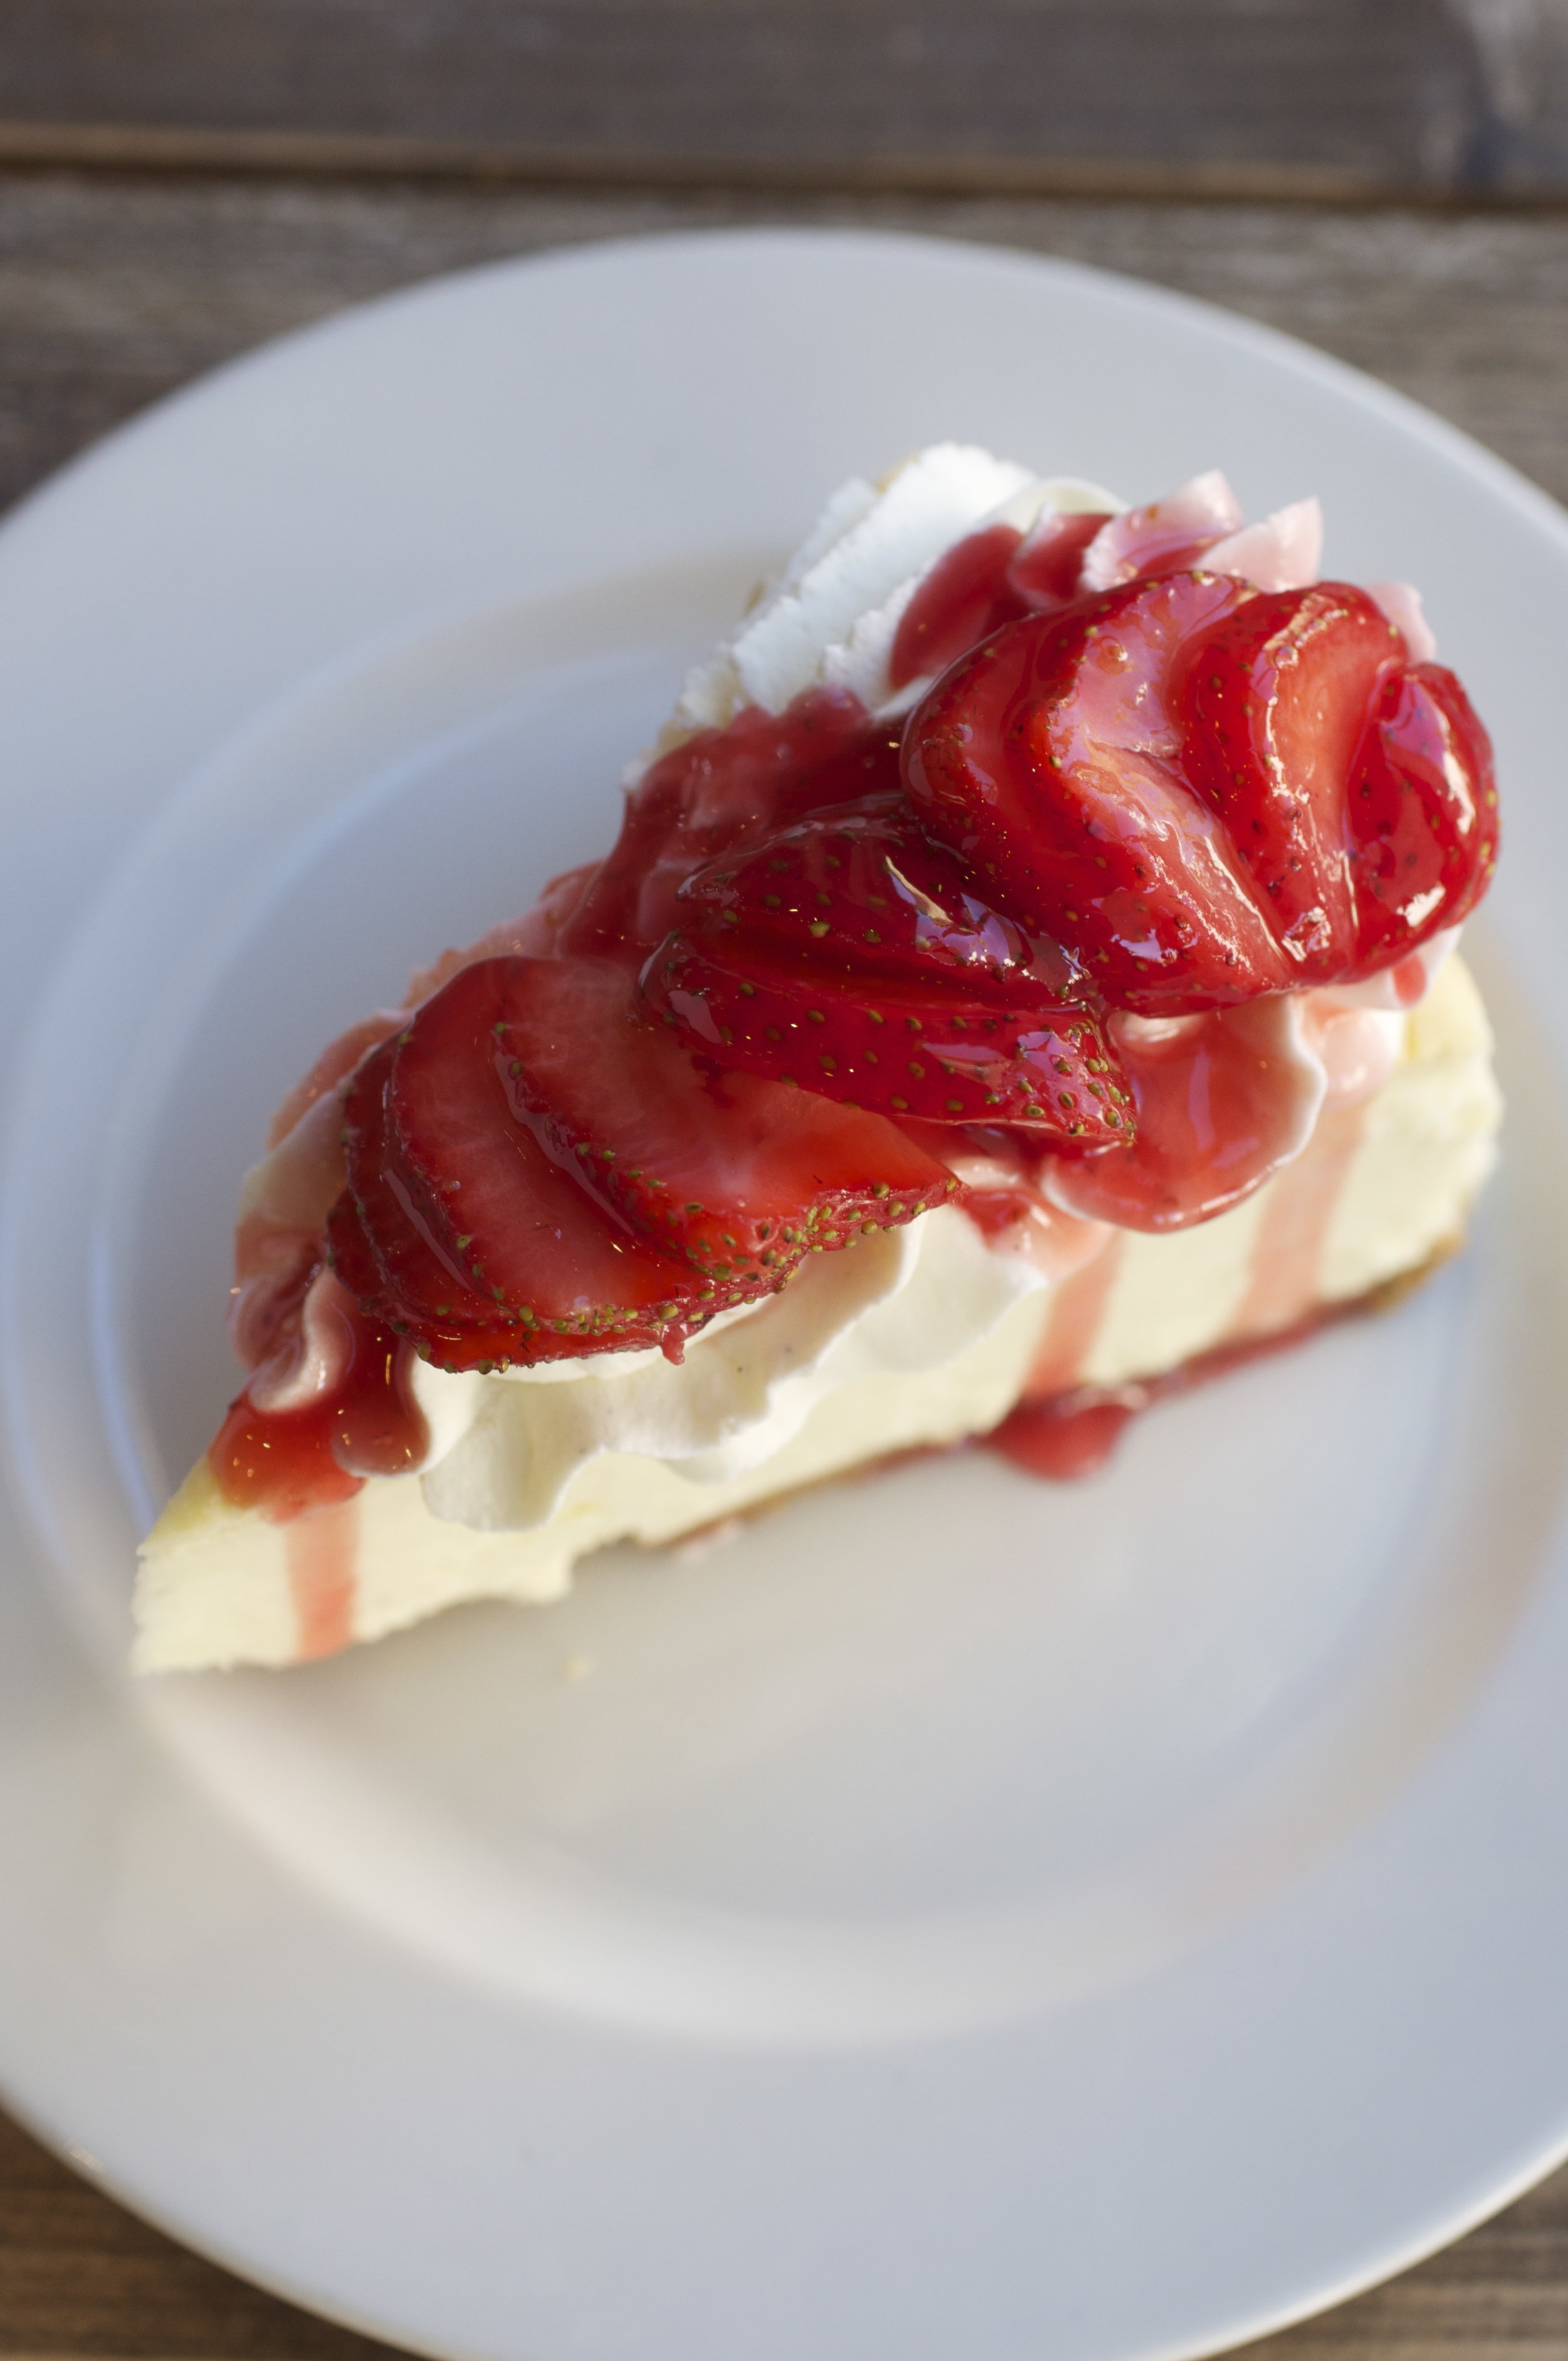 NY Cheesecake with Strawberry, Kimberly Park.jpg